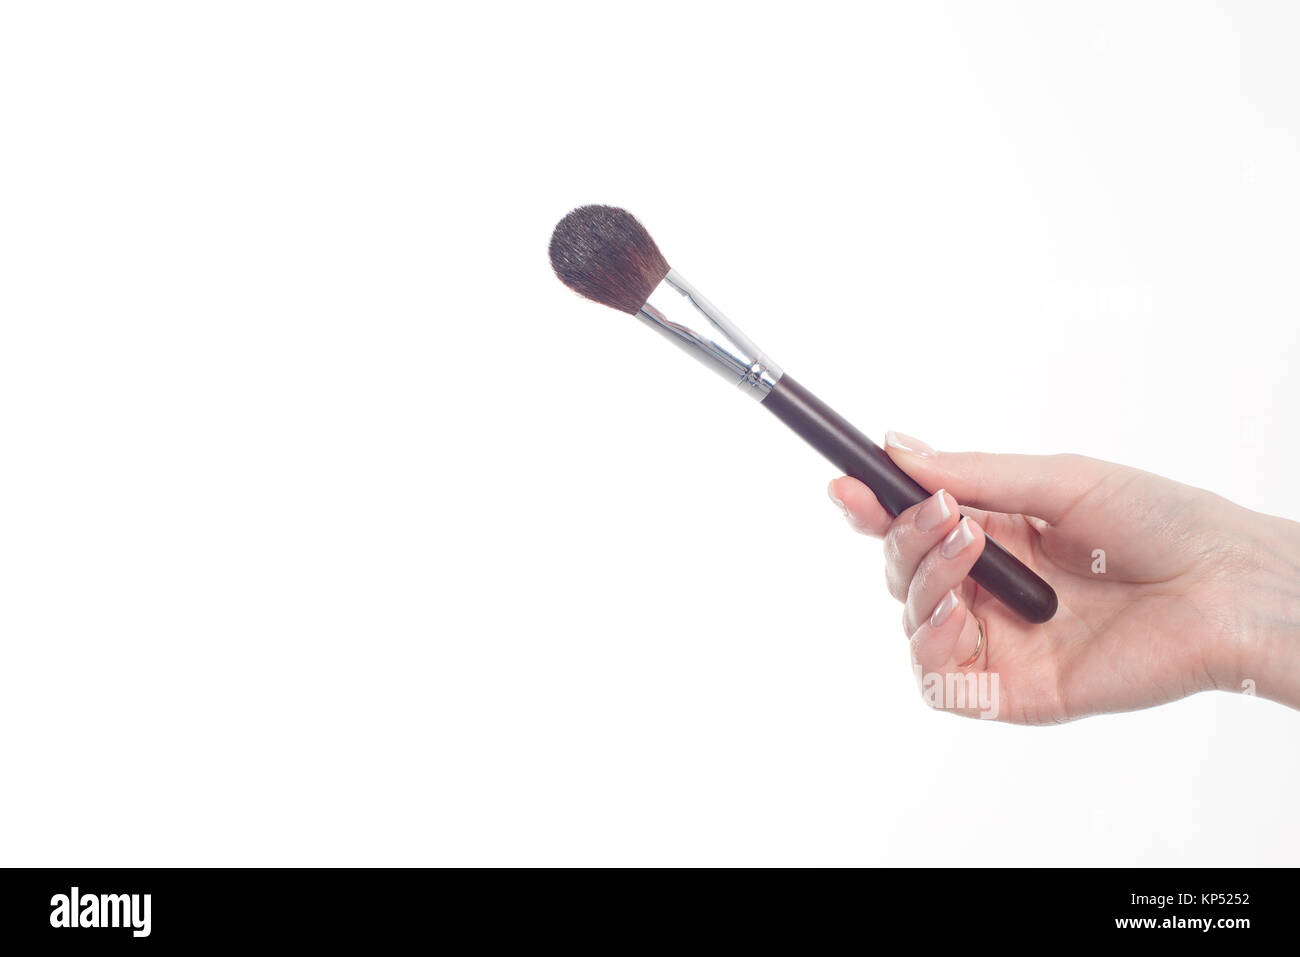 Female hand holding professional make-up brushe isolated on white background Stock Photo